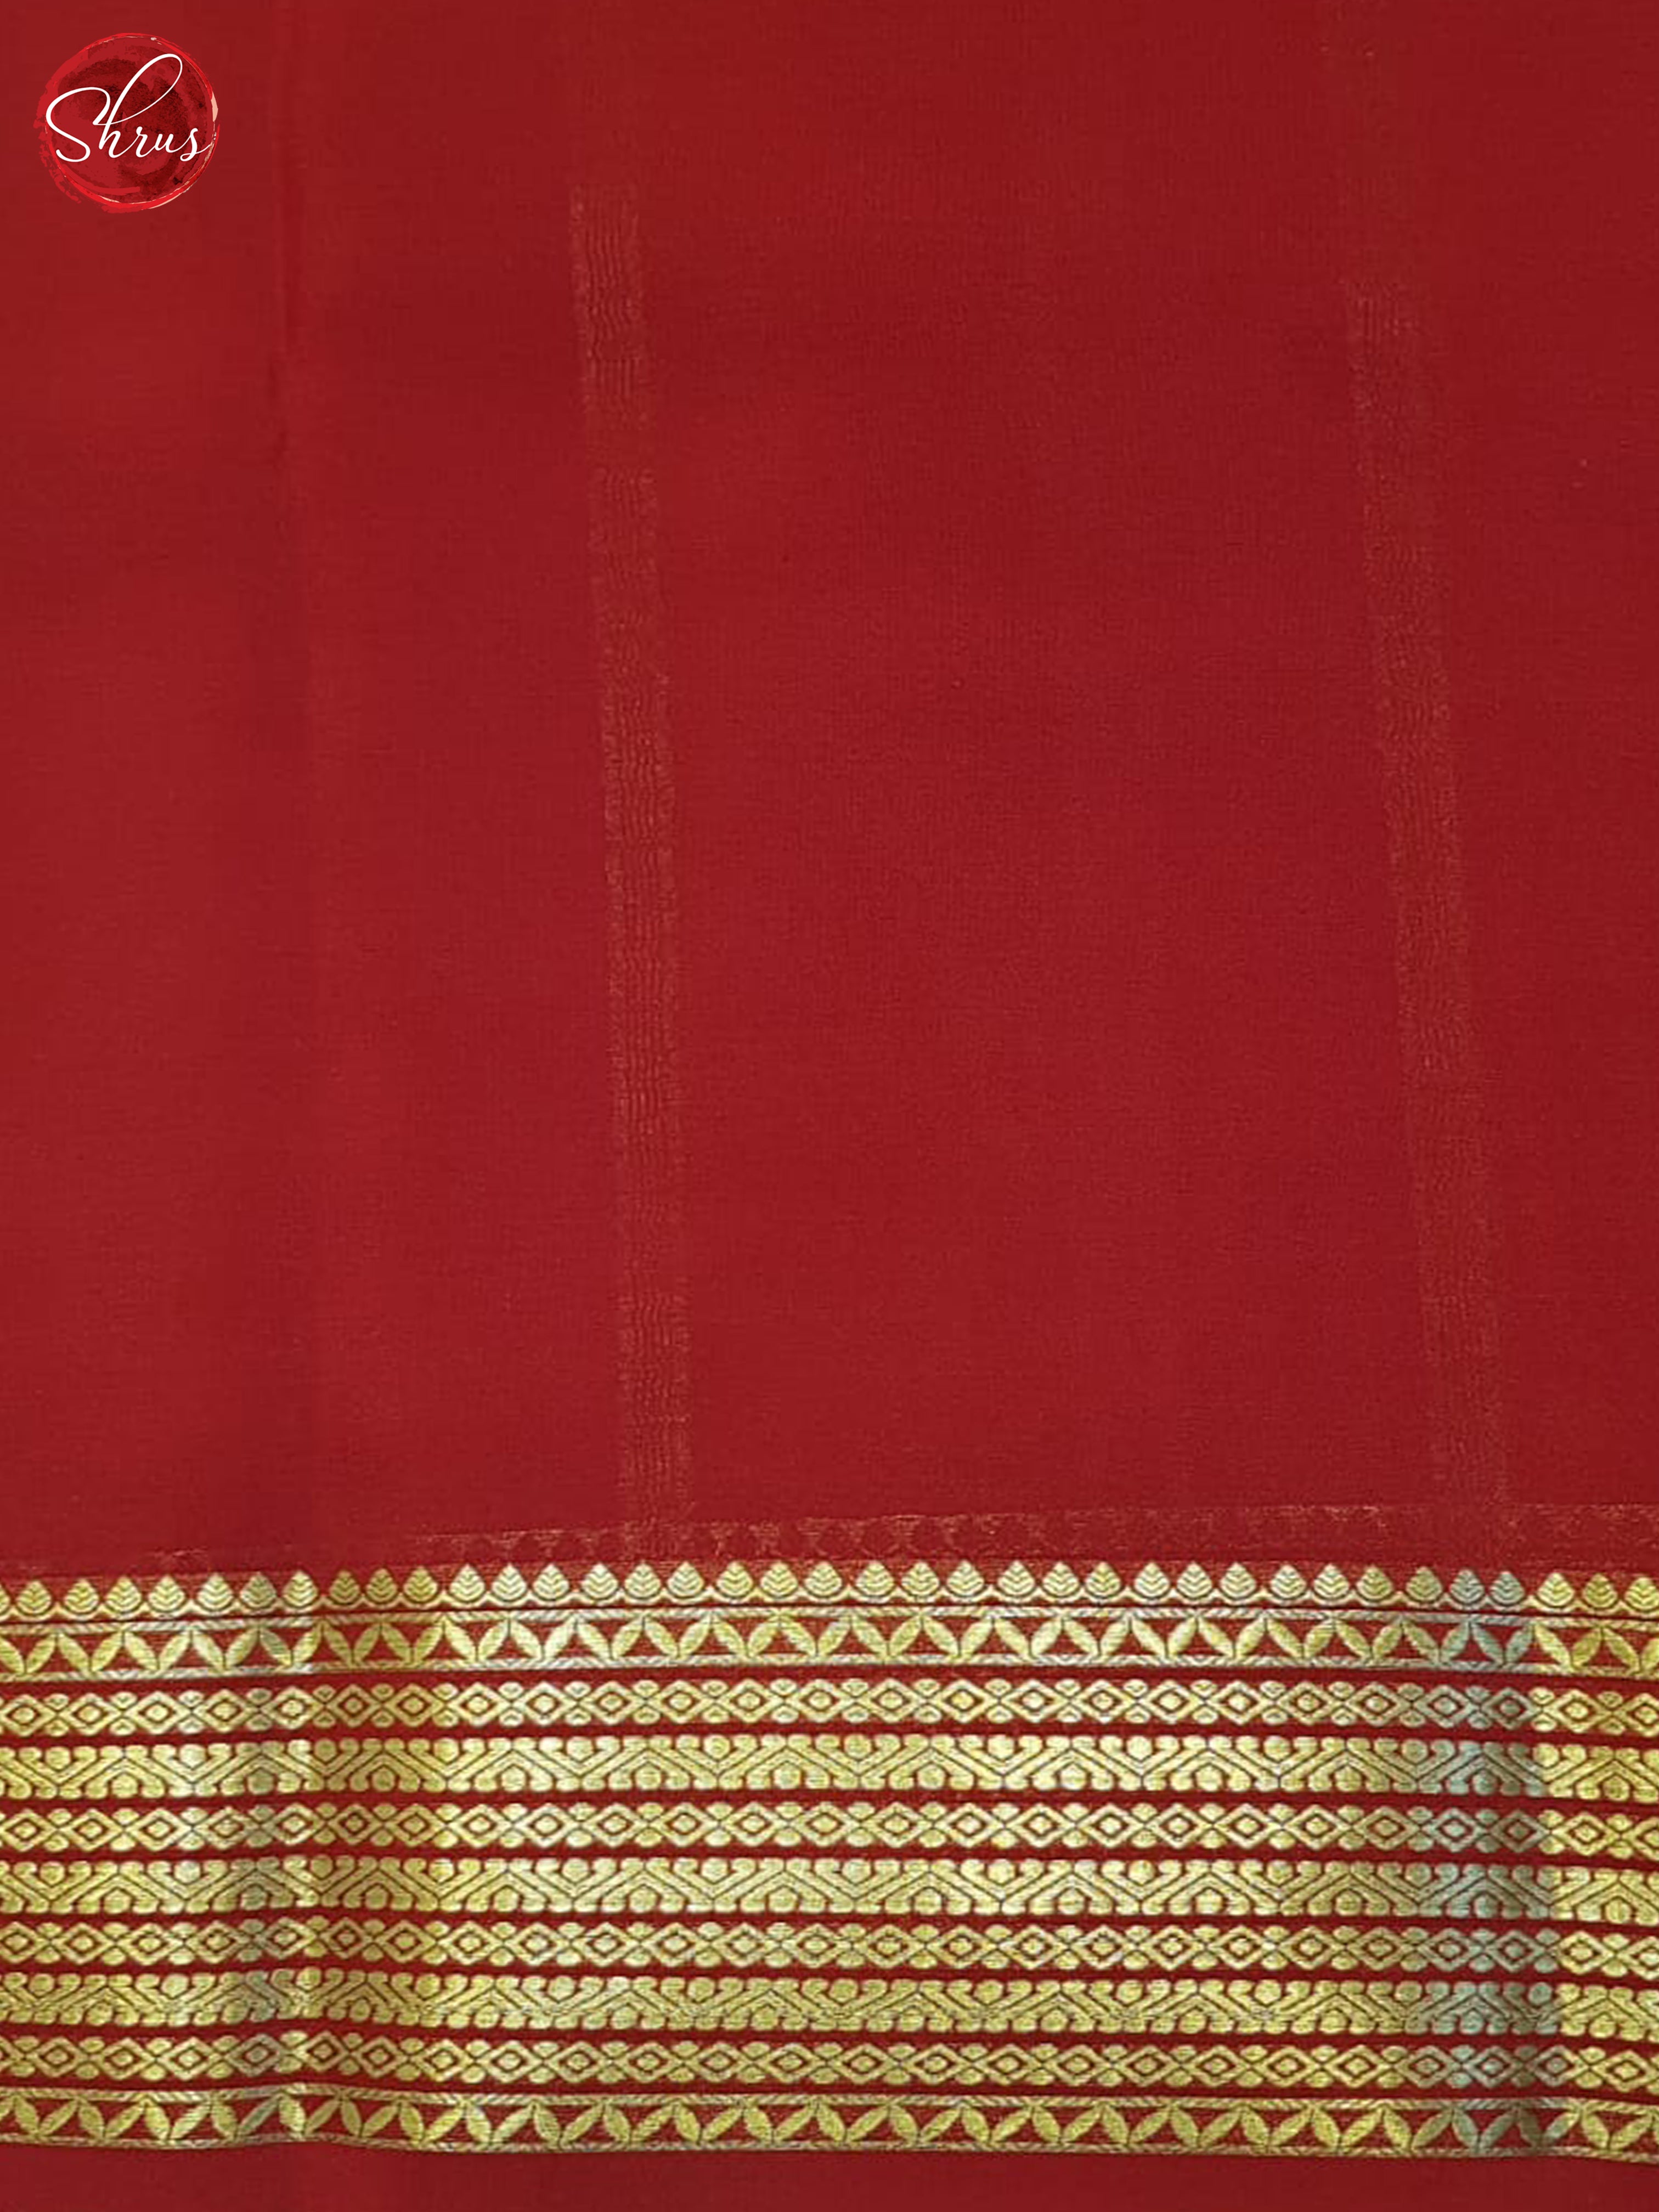 Cream & red- Mysore Silk Saree - Shop on ShrusEternity.com